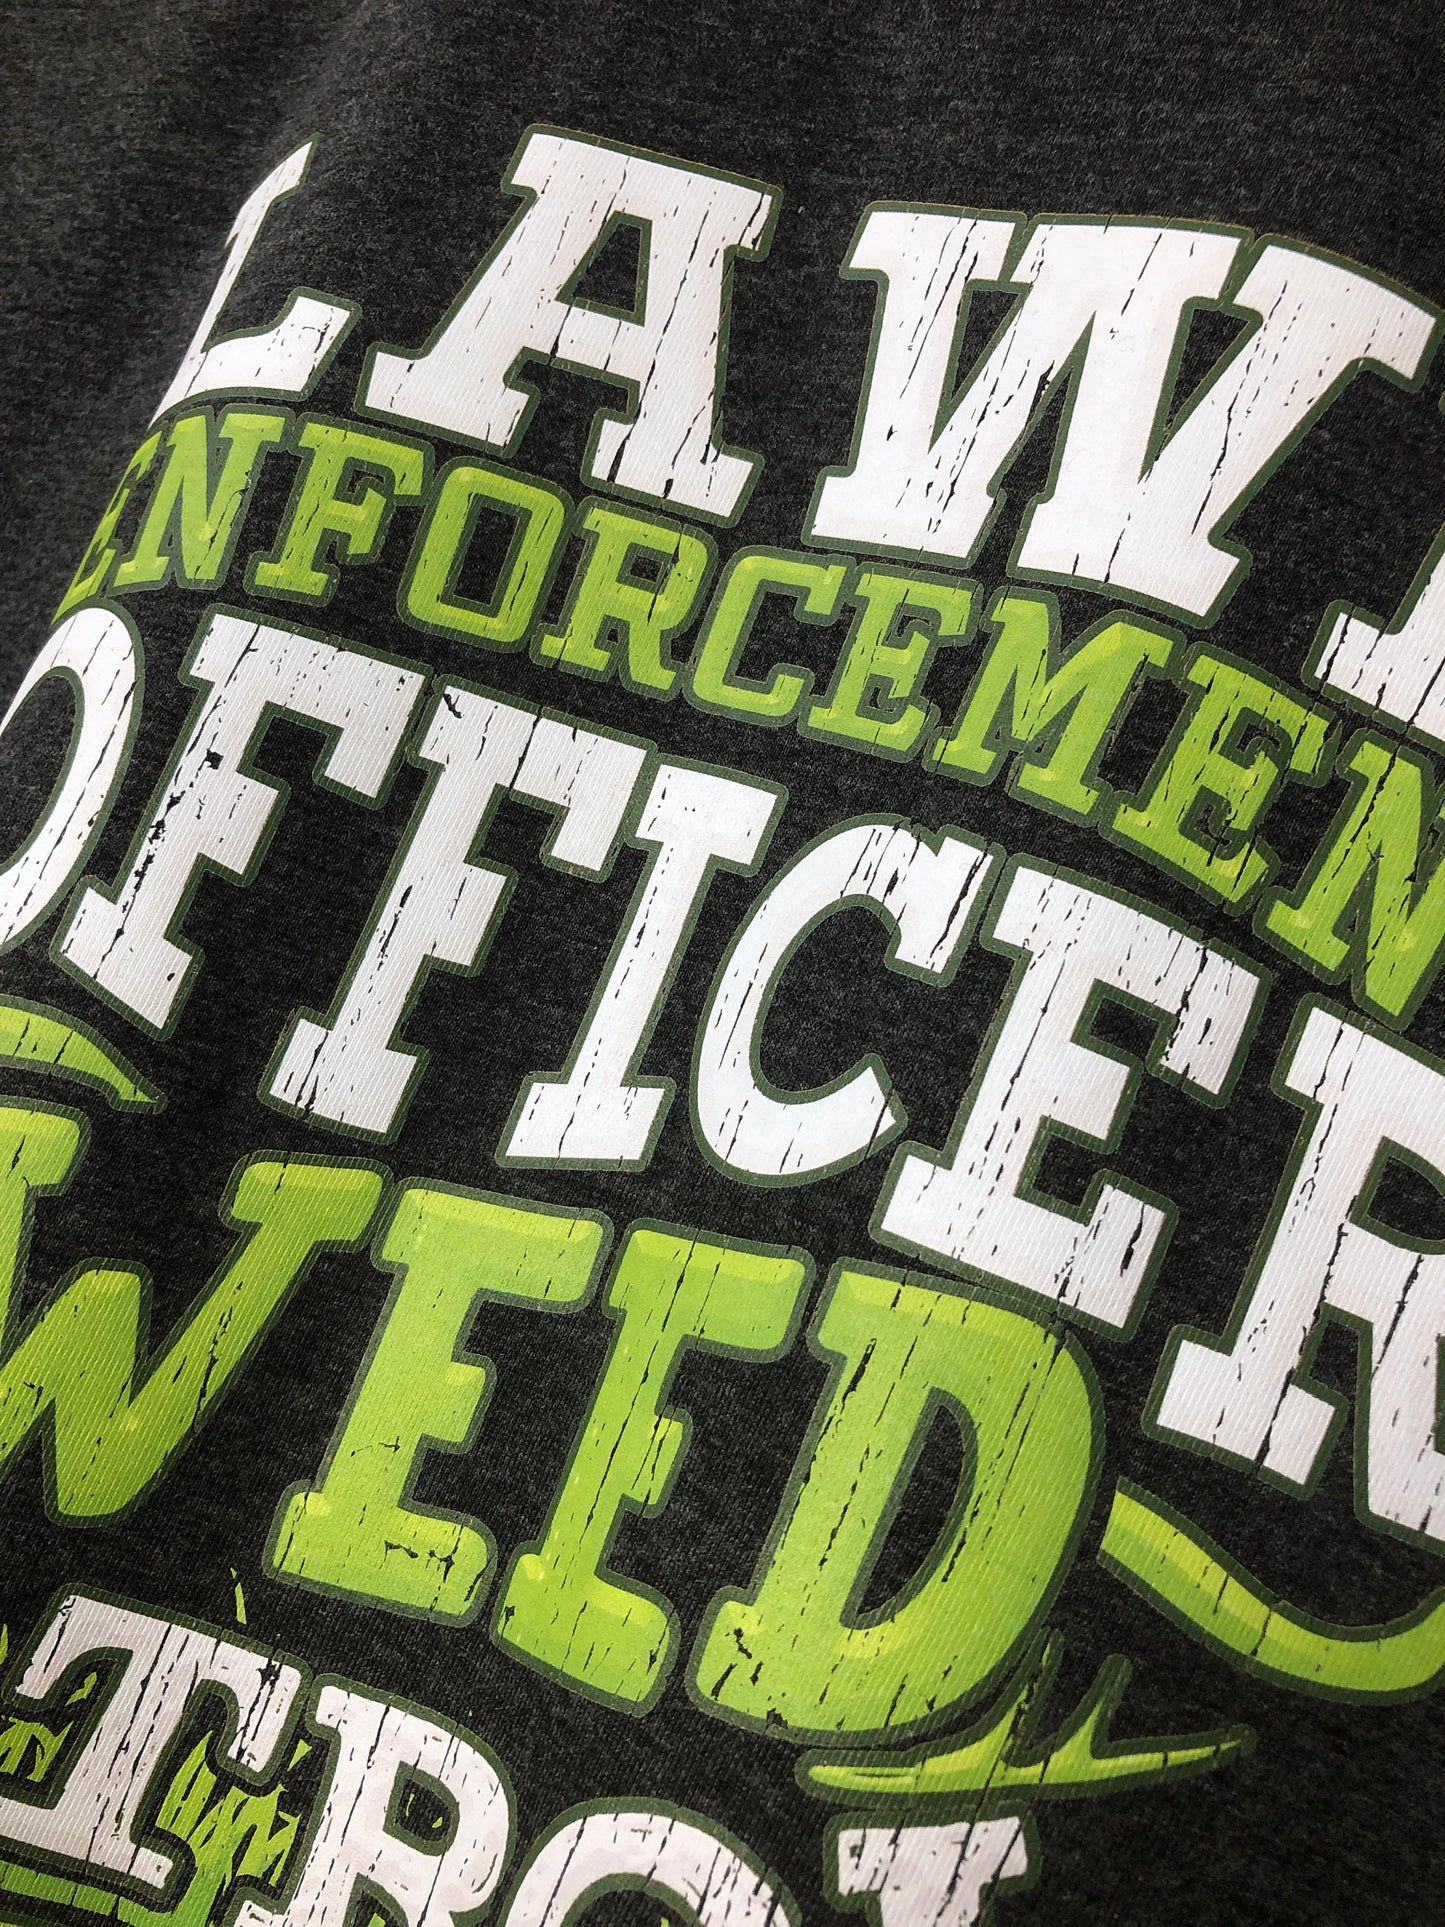 Funny Lawn Mower T-Shirt, Lawn Enforcement Officer Pun Gift Idea, Humorous Grass Cutter Tee Shirt Top